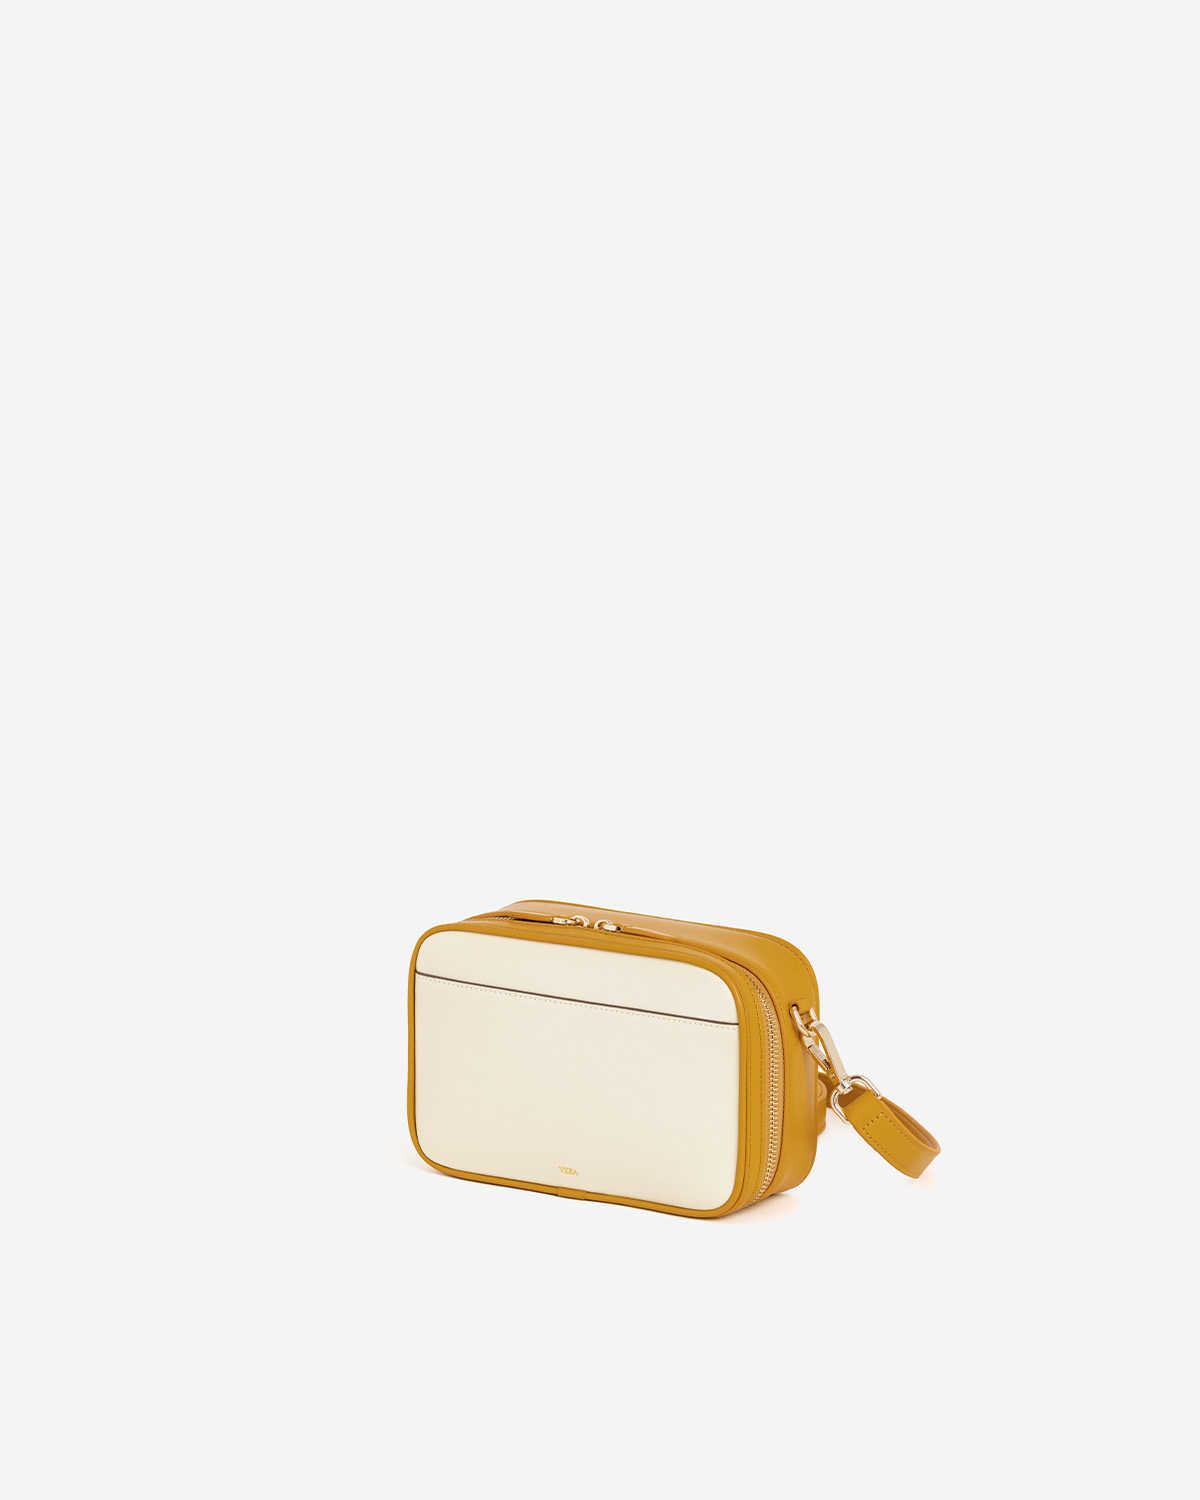 กระเป๋าสะพายข้างหนังแท้ VERA Snack Box Leather Crossbody bag สี Lemon Tart